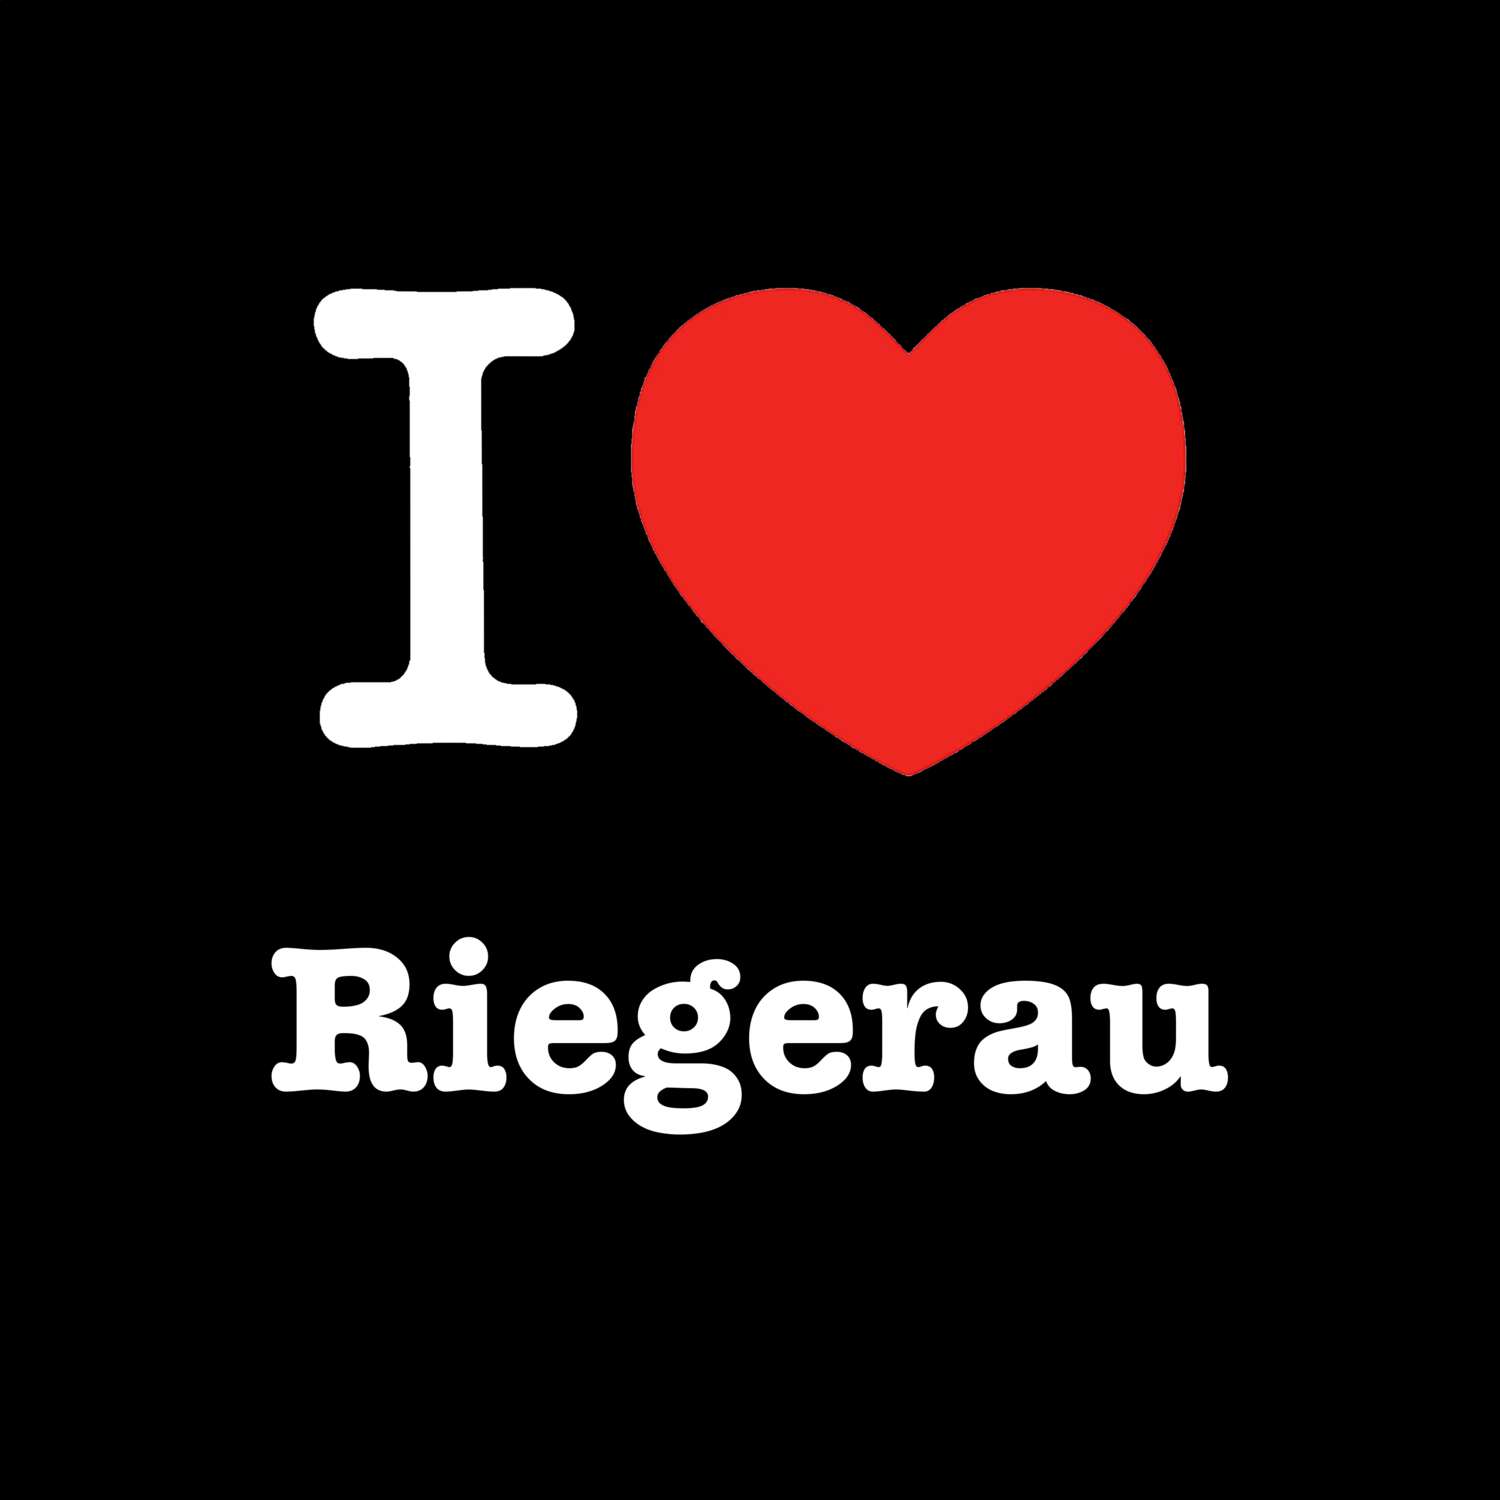 Riegerau T-Shirt »I love«